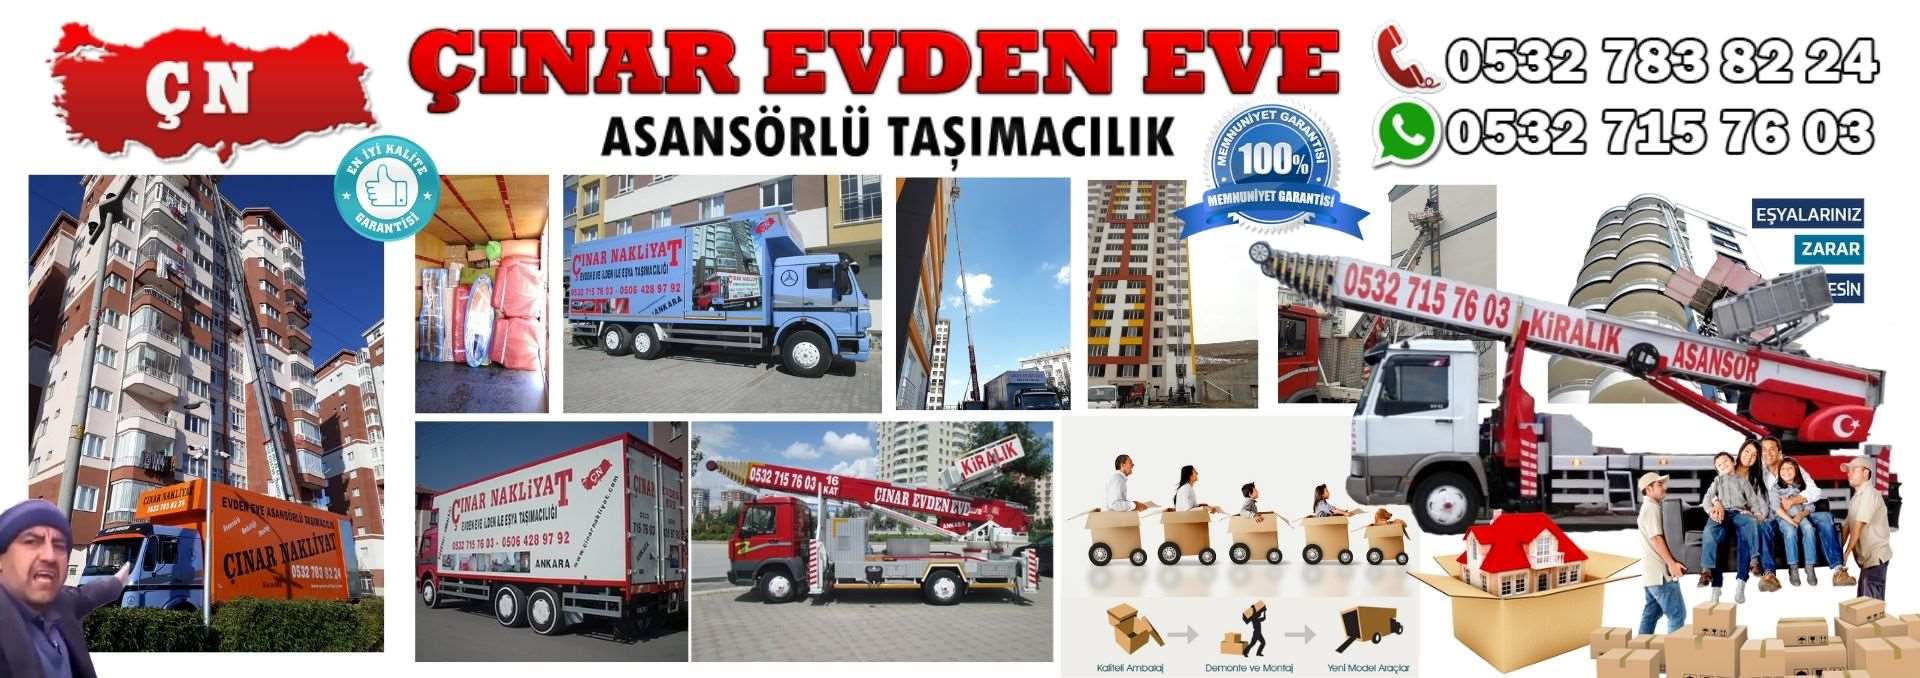 Ankara Pursaklar Evden Eve Asansörlü Ev Eşyası Taşıma 0532 715 76 03